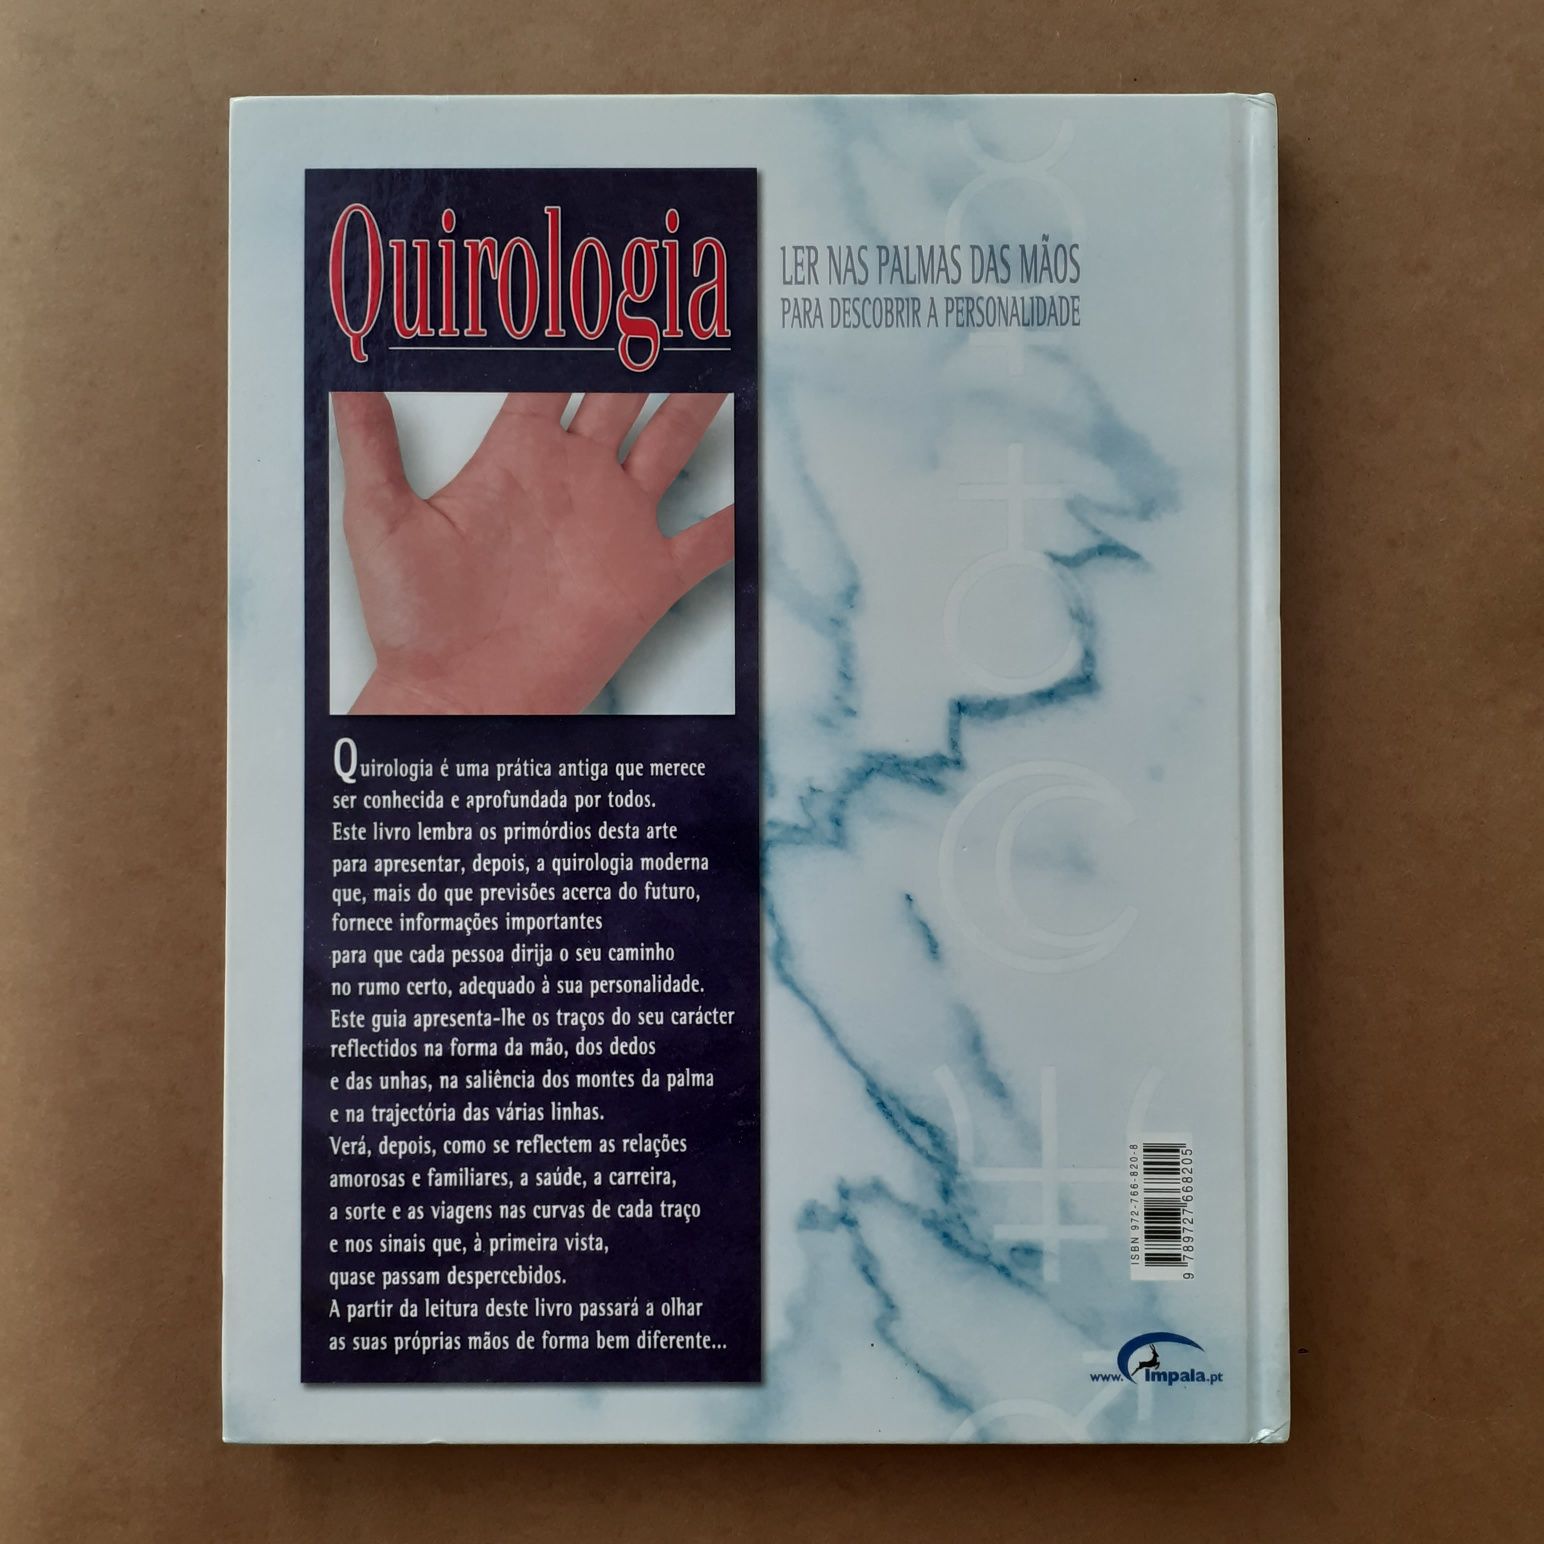 Quirologia - Ler nas palmas das mãos